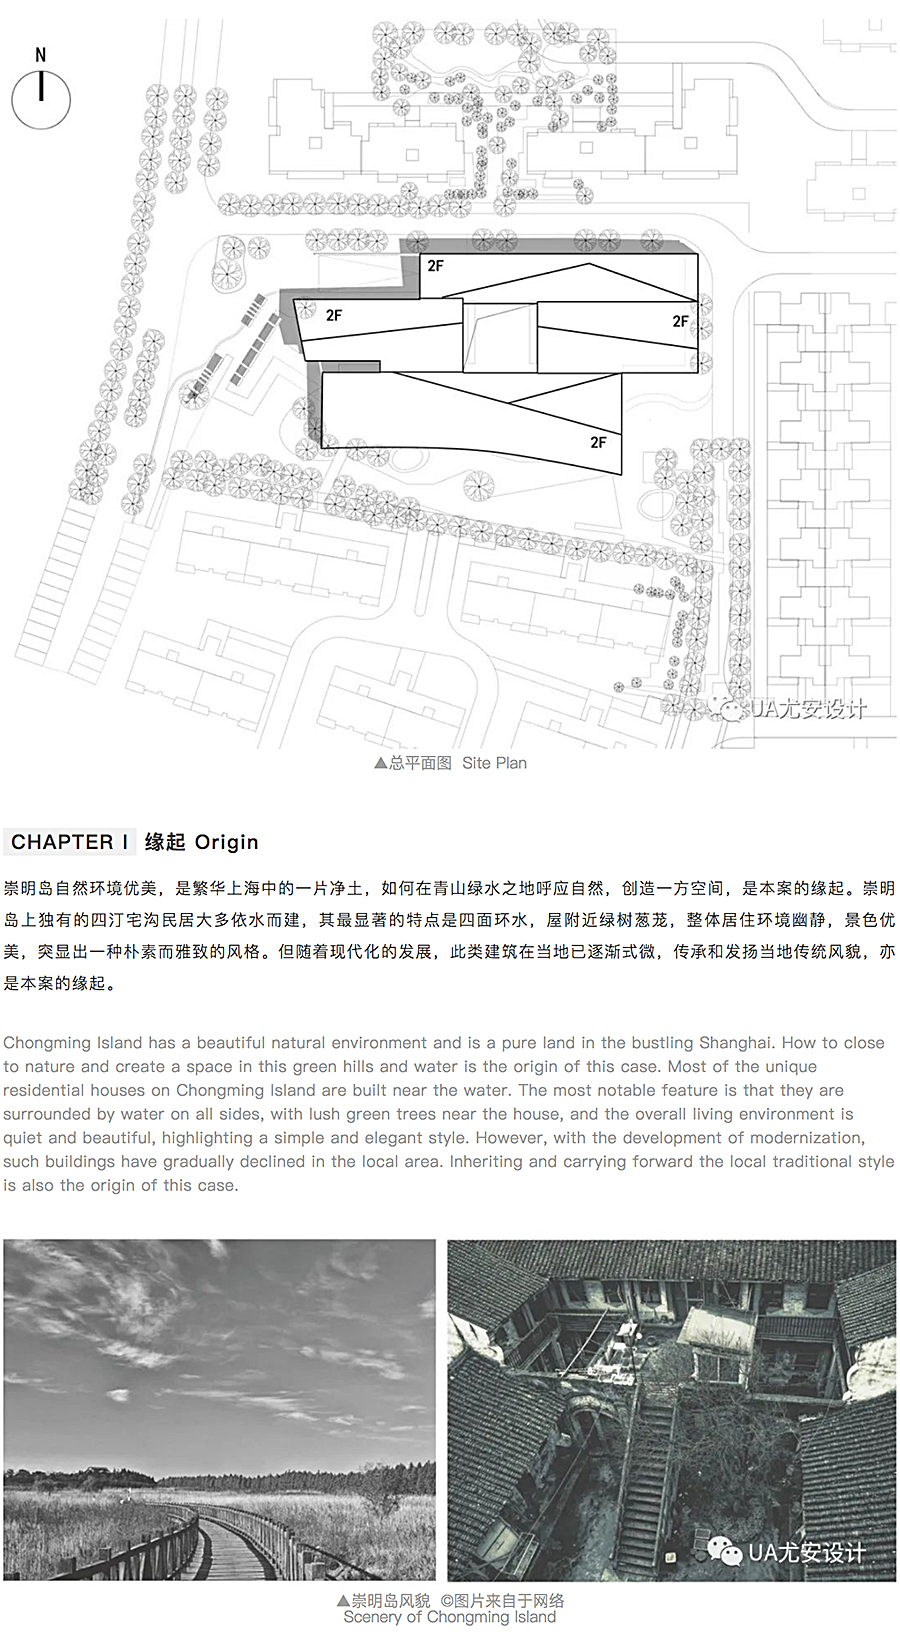 上海中信泰富-_-仁恒海和院展示中心_0001_图层-2.jpg